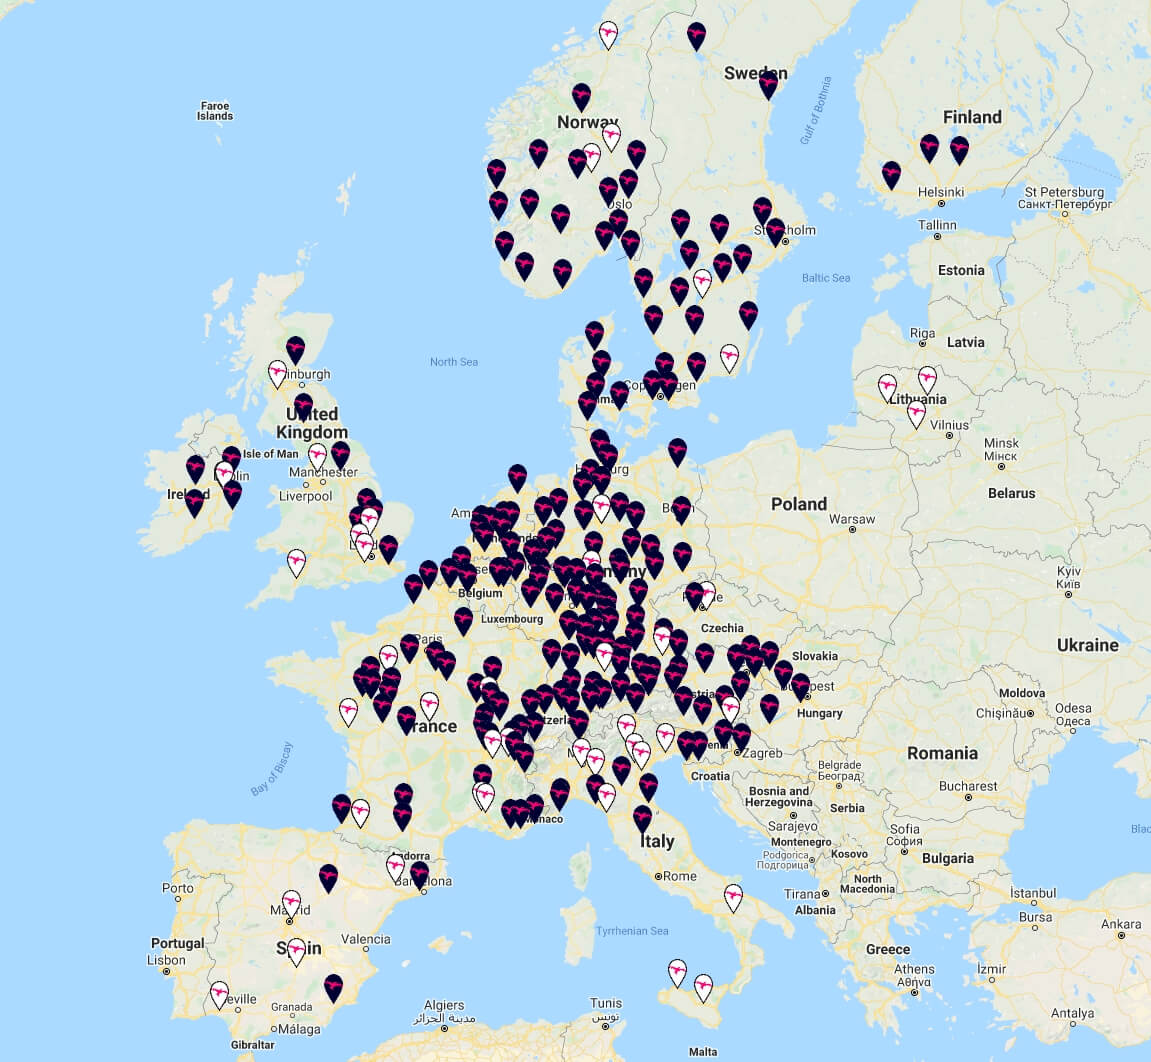 Сеть сверхмощных зарядных станций IONITY в Европе на 6 июля 2020 года